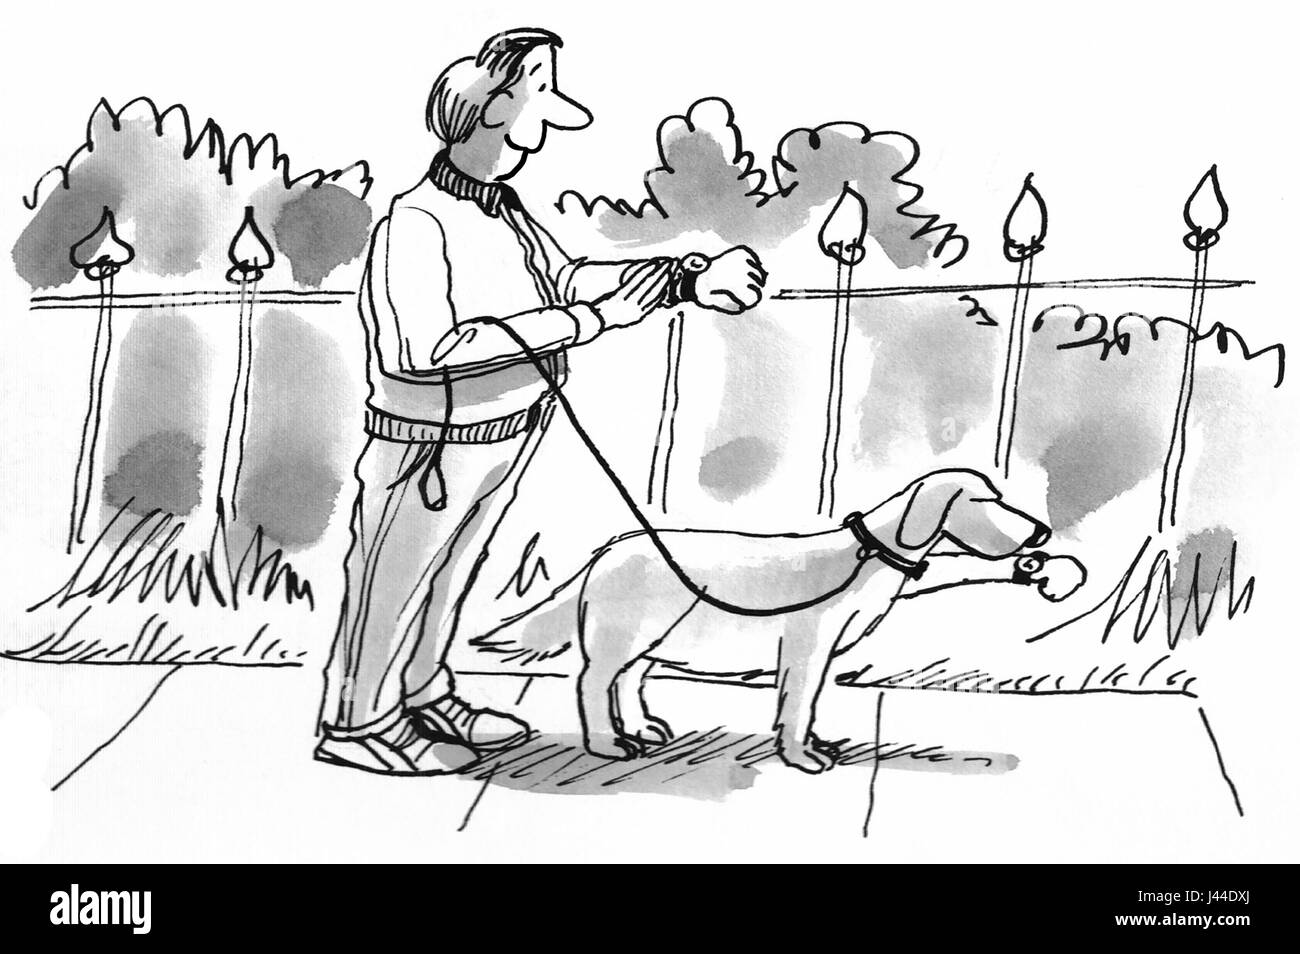 Cartoon illustration d'un homme et son chien pour une course chronométrée. Banque D'Images